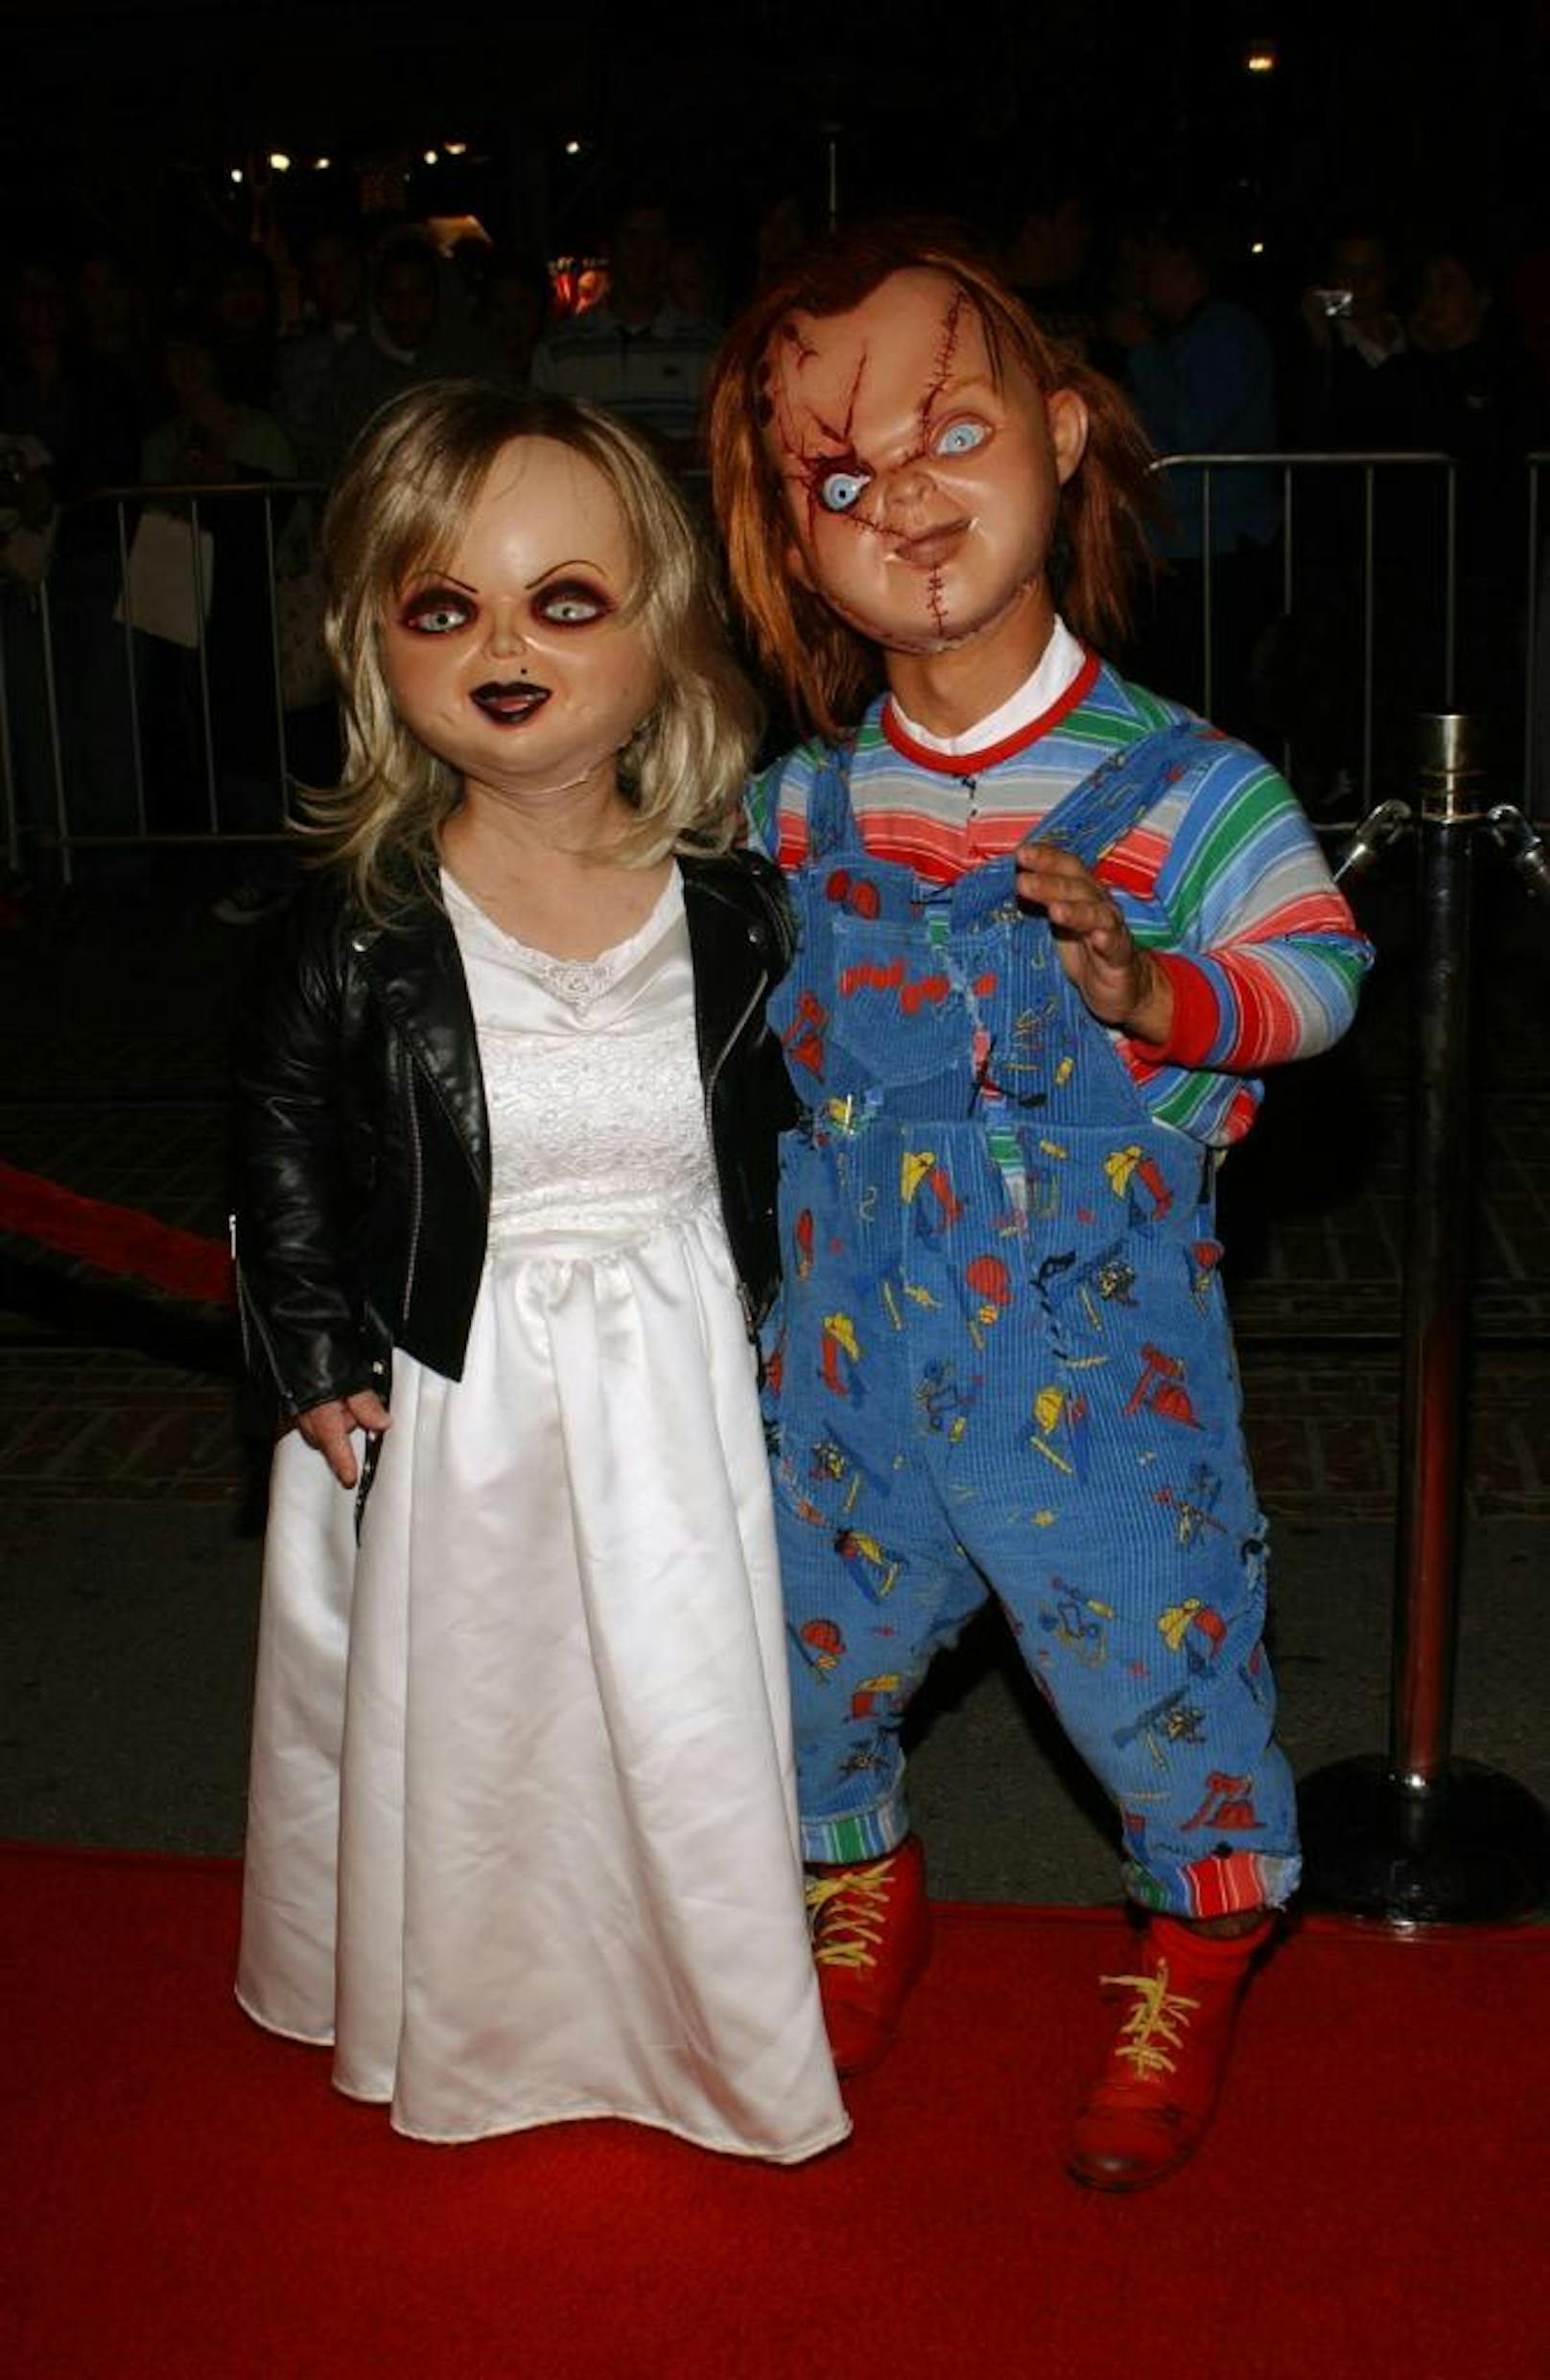 Gruseliges Paar - Die Mörderpuppen Chucky und Tiffany 